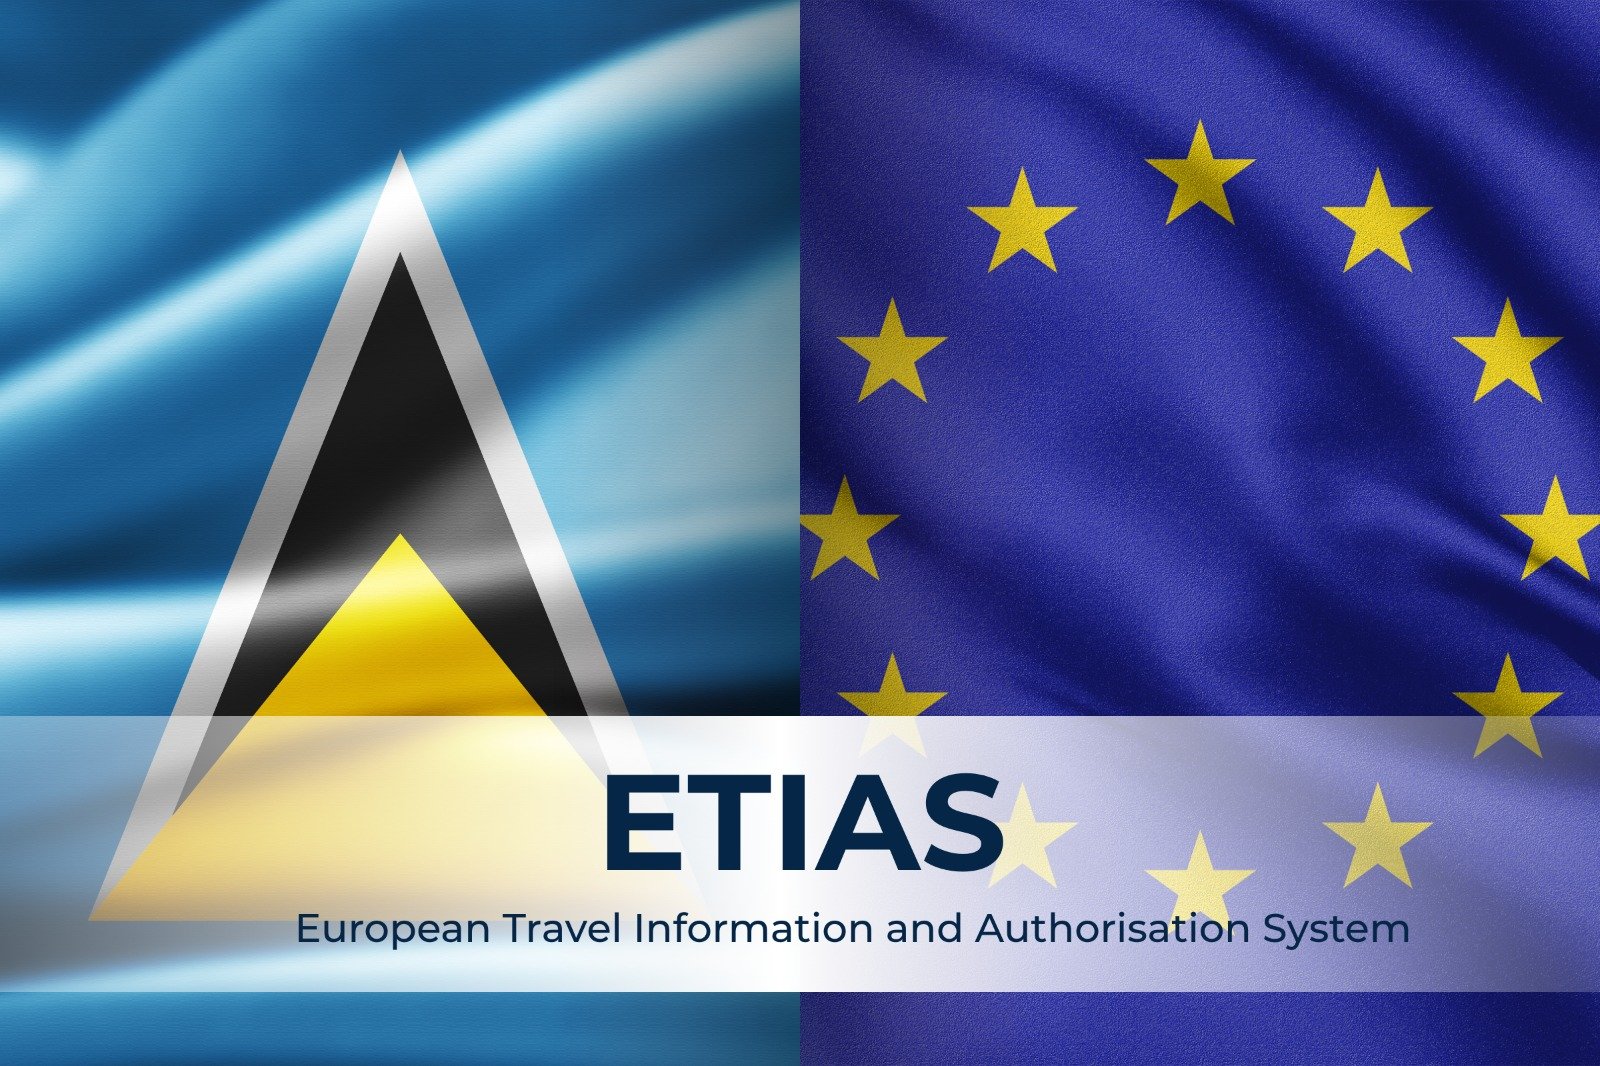 نظام إتياس (ETIAS) وتأثيره على جنسية سانت لوسيا